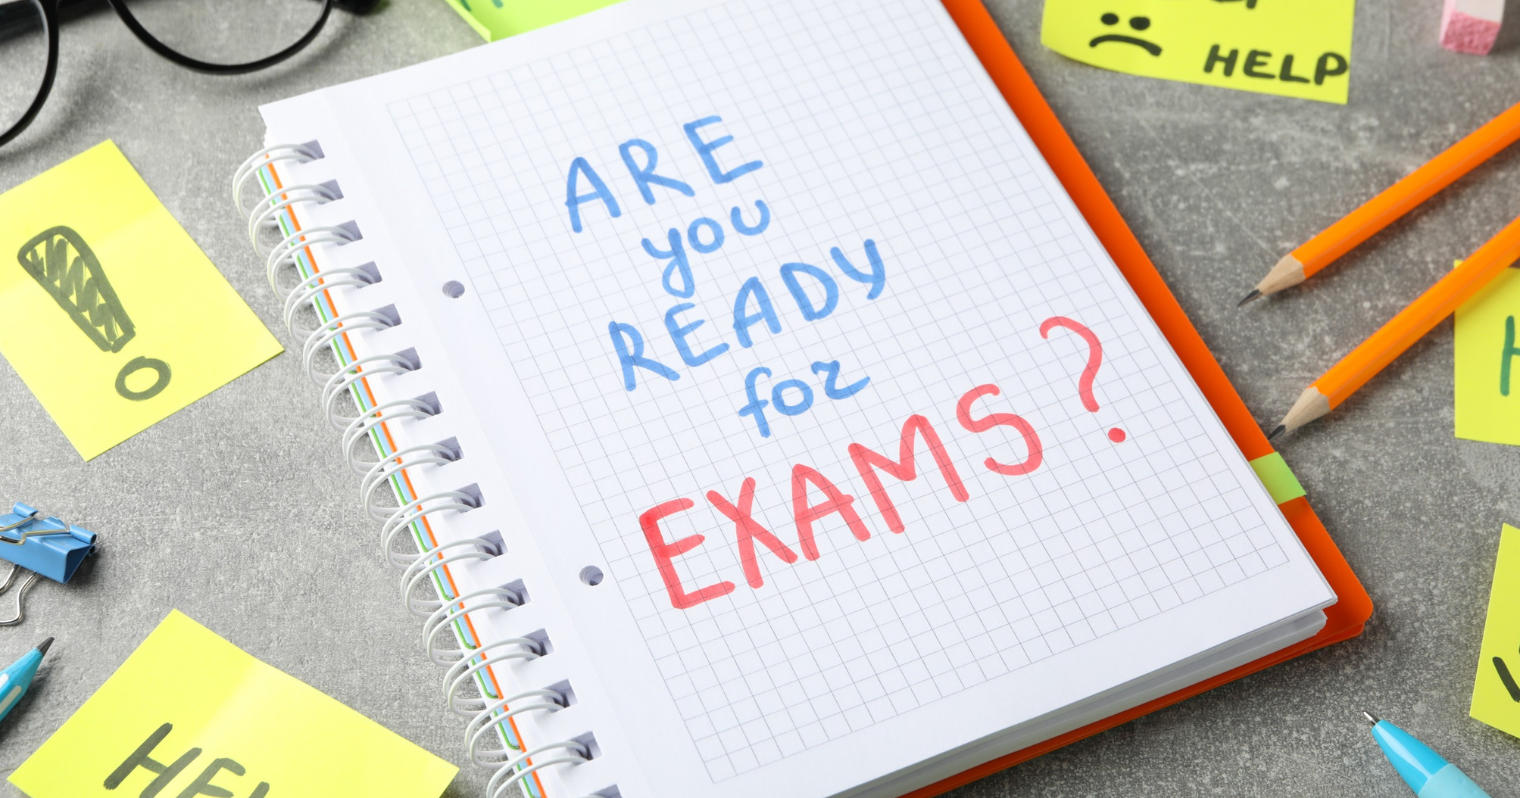 A képen egy füzet látható are you ready for exams felirattal.